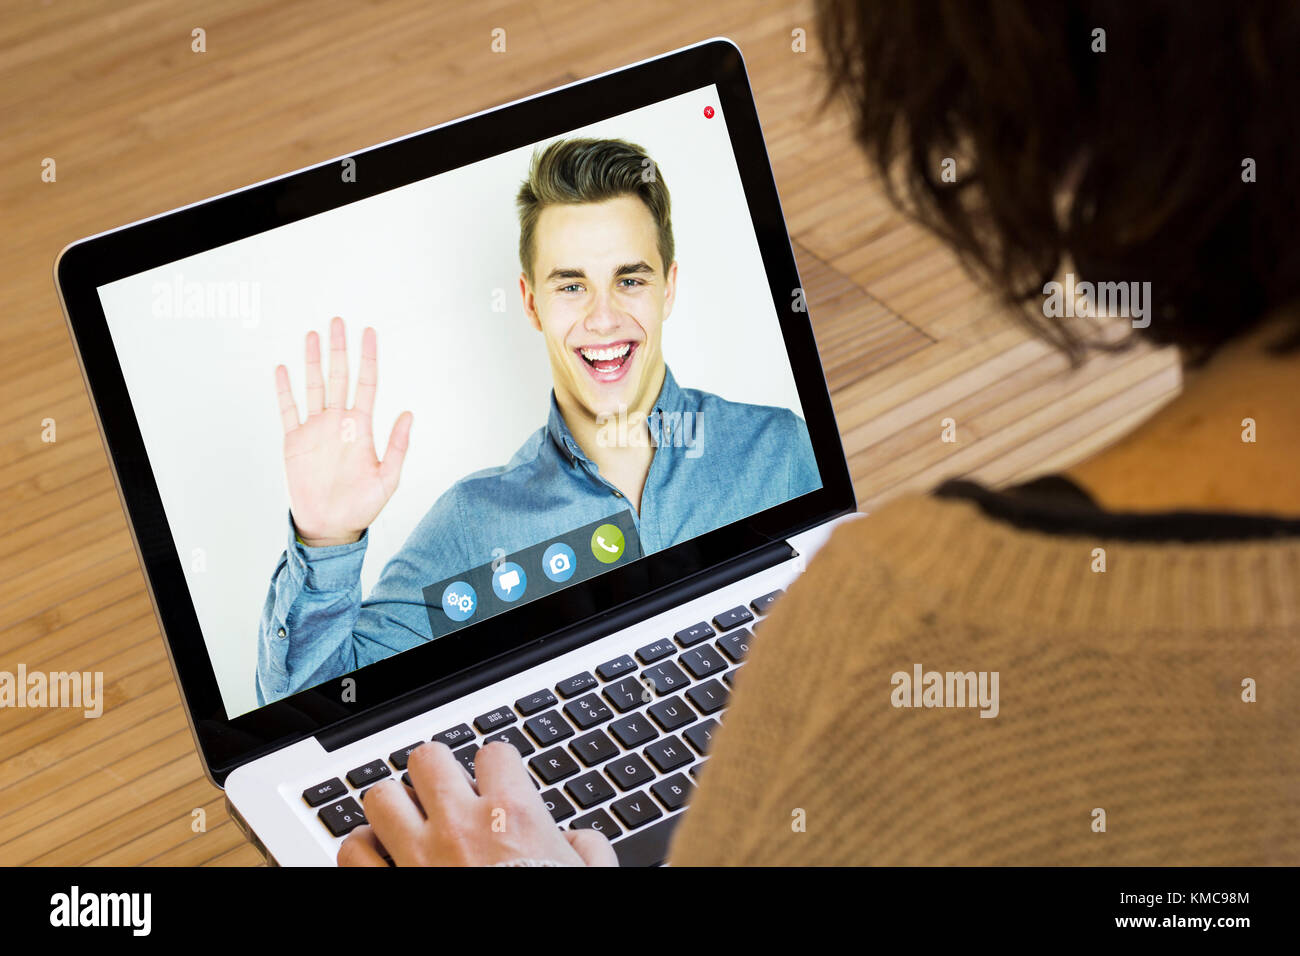 Business online concetto: imprenditore dicendo ciao su uno schermo di computer portatile. i grafici dello schermo sono costituiti. Foto Stock